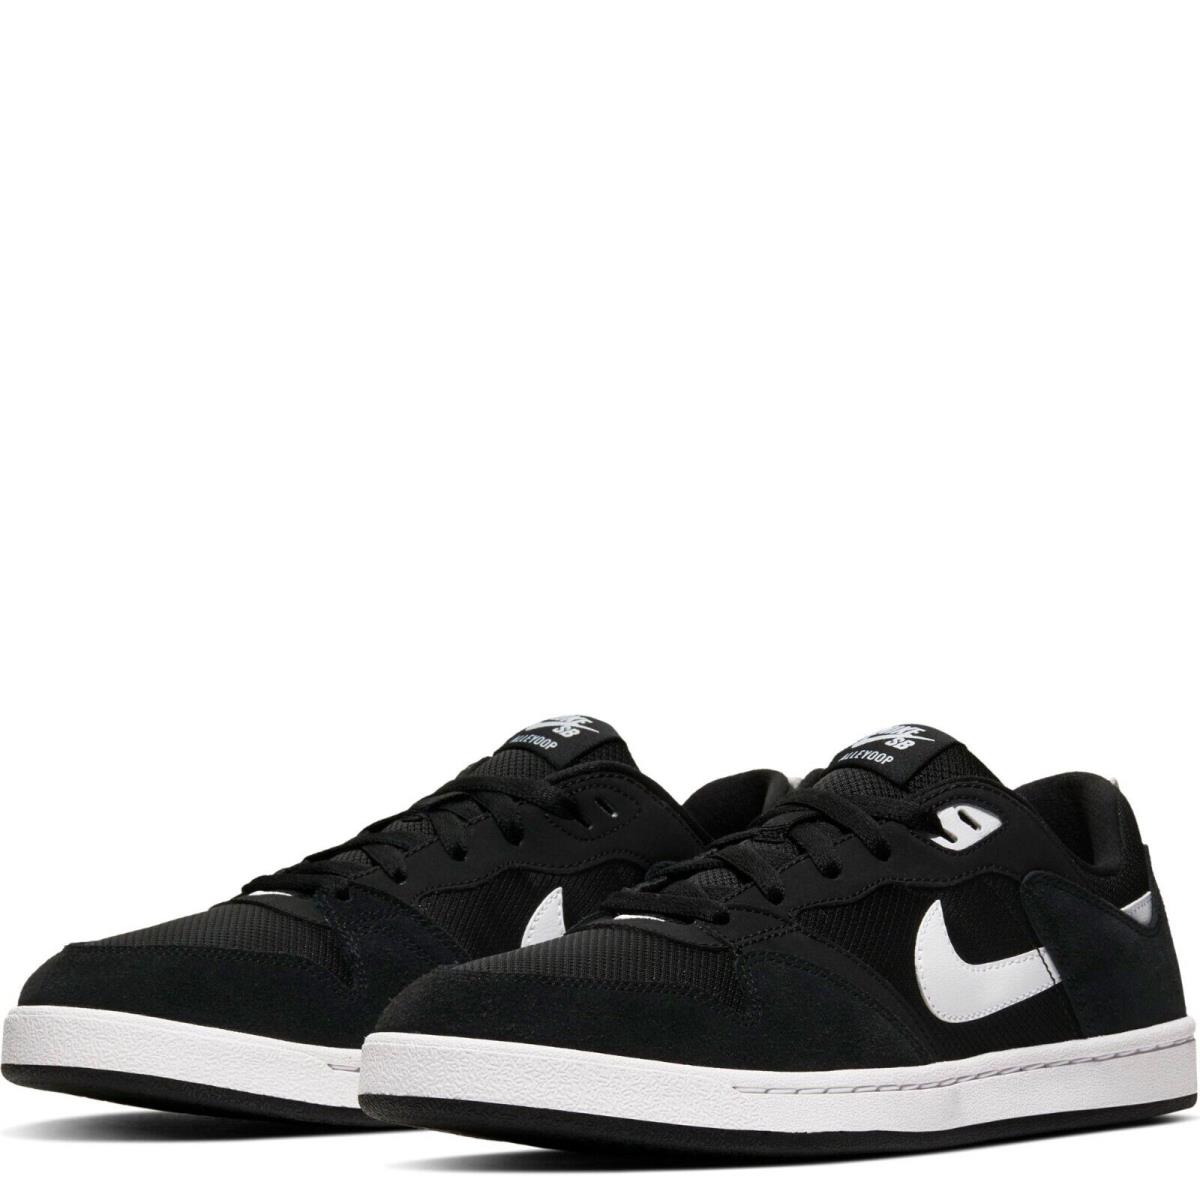 Nike SB Alleyoop CJ0882-001 Men`s Black/white Lace-up Sneaker Shoes ANK418 9